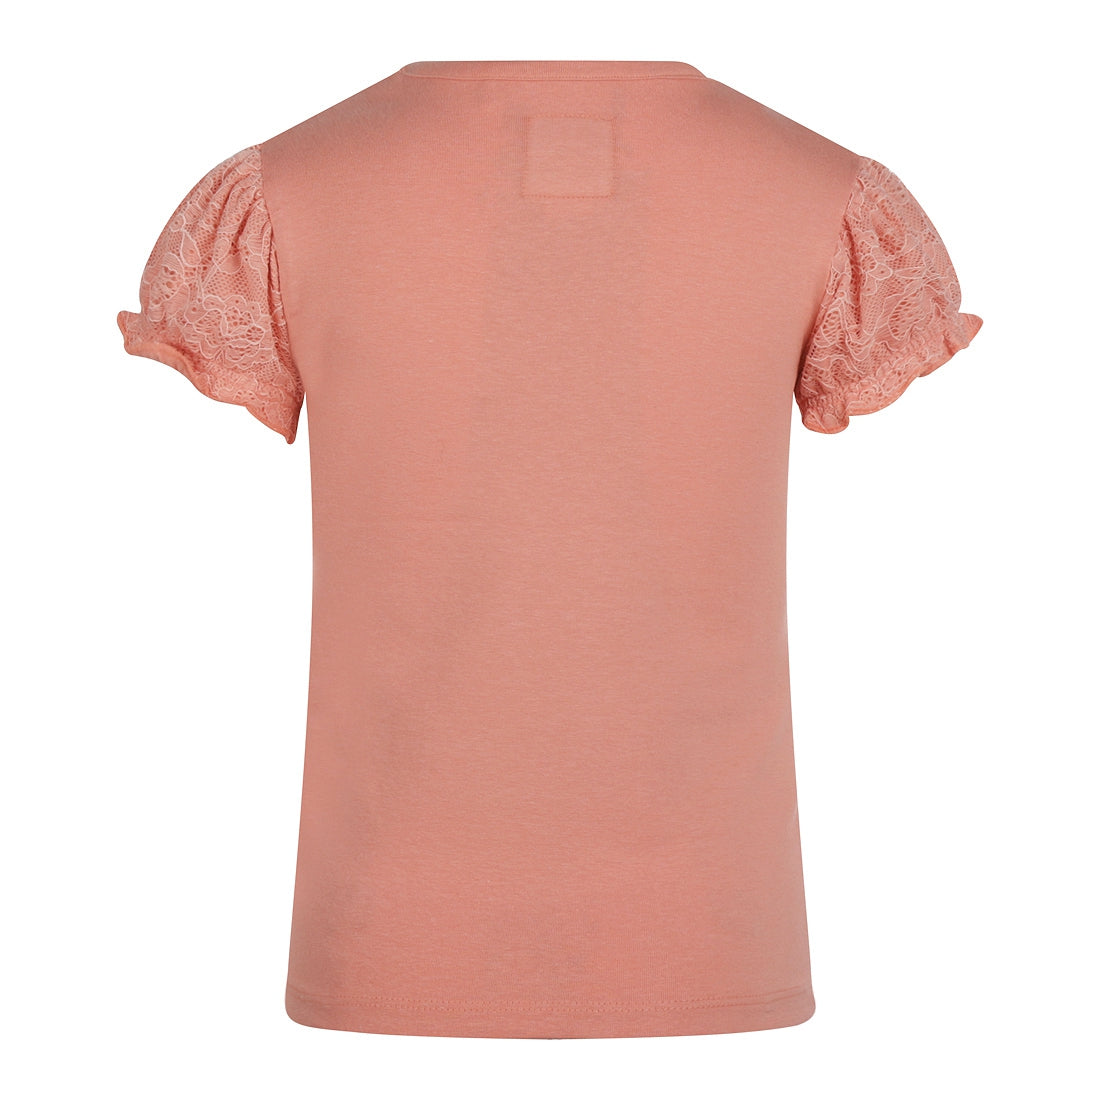 Meisjes T-shirt ss van Koko Noko in de kleur Coral pink in maat 128.